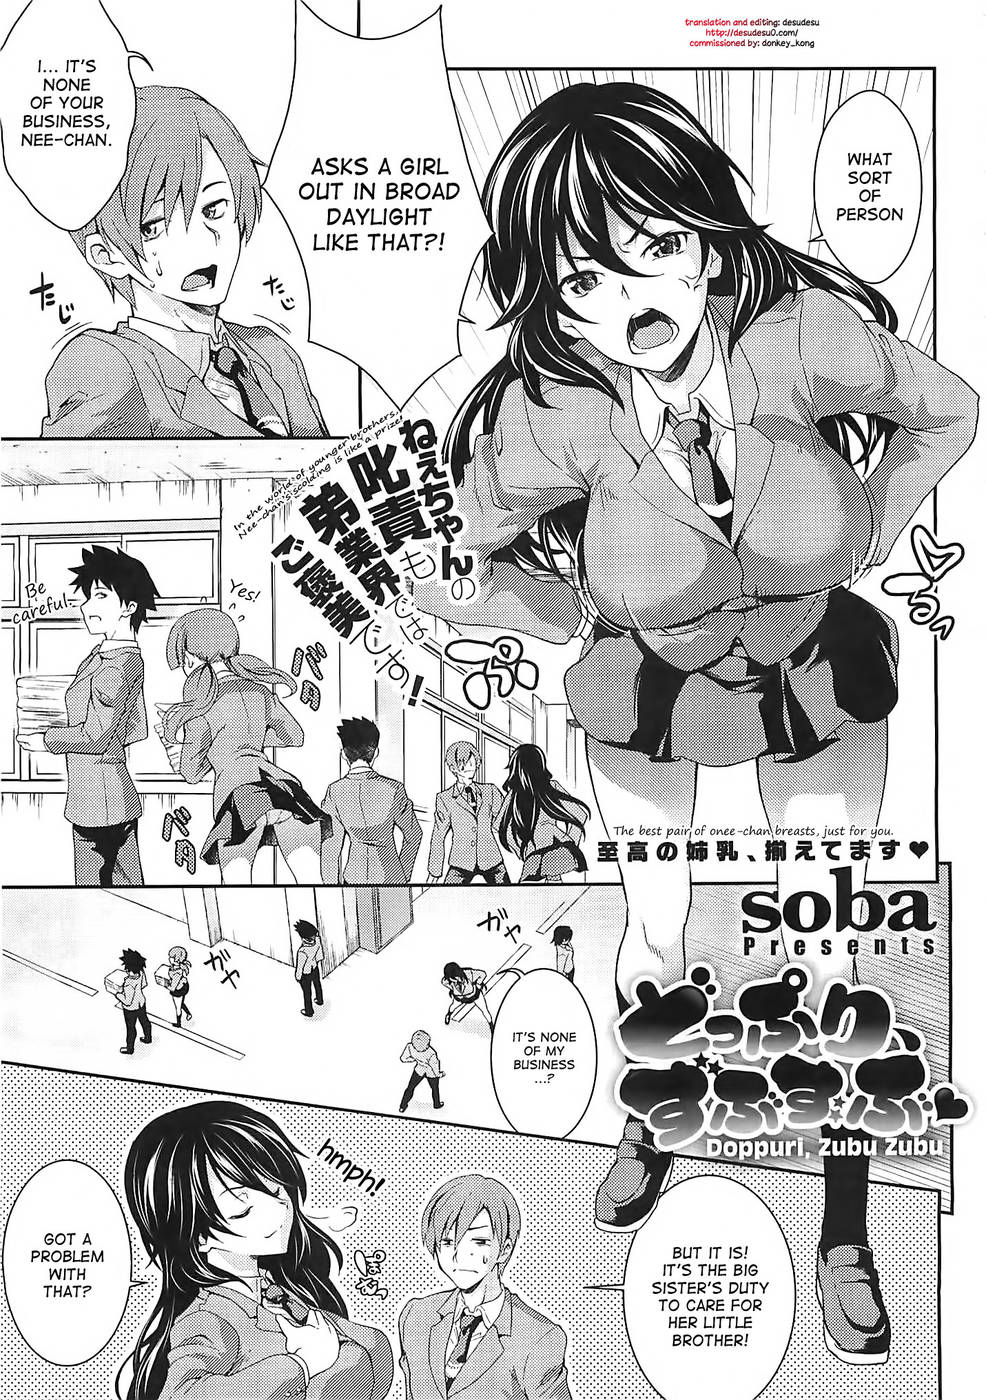 Hentai Manga Comic-Doppuri, Zubu Zubu-Read-1